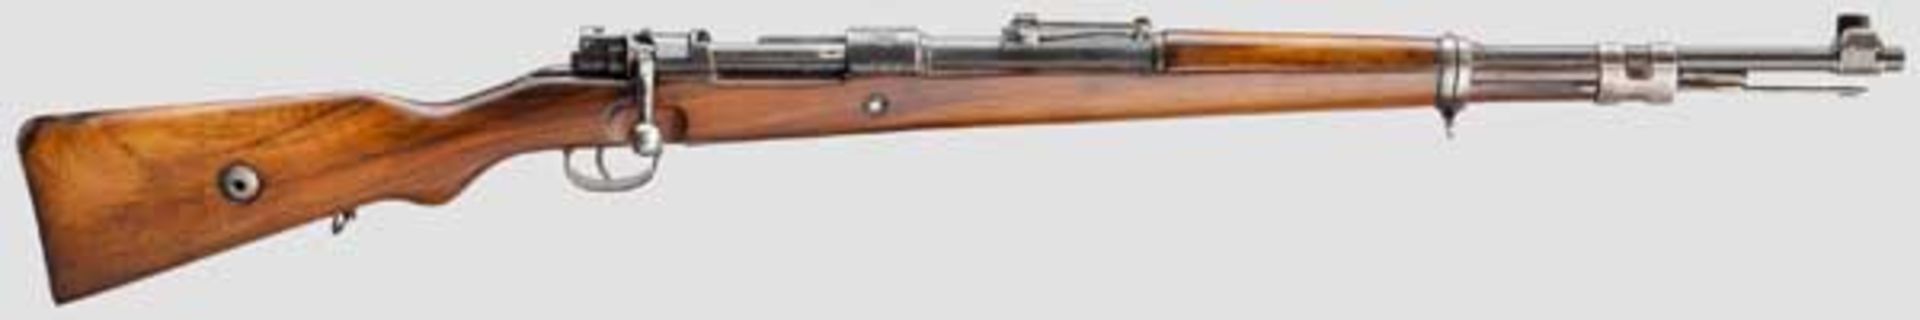 Karabiner 98 k M 1937, Mauser Kal. 8 x 57, Nr. D12522. Nummerngleich. Lauf eingefettet.